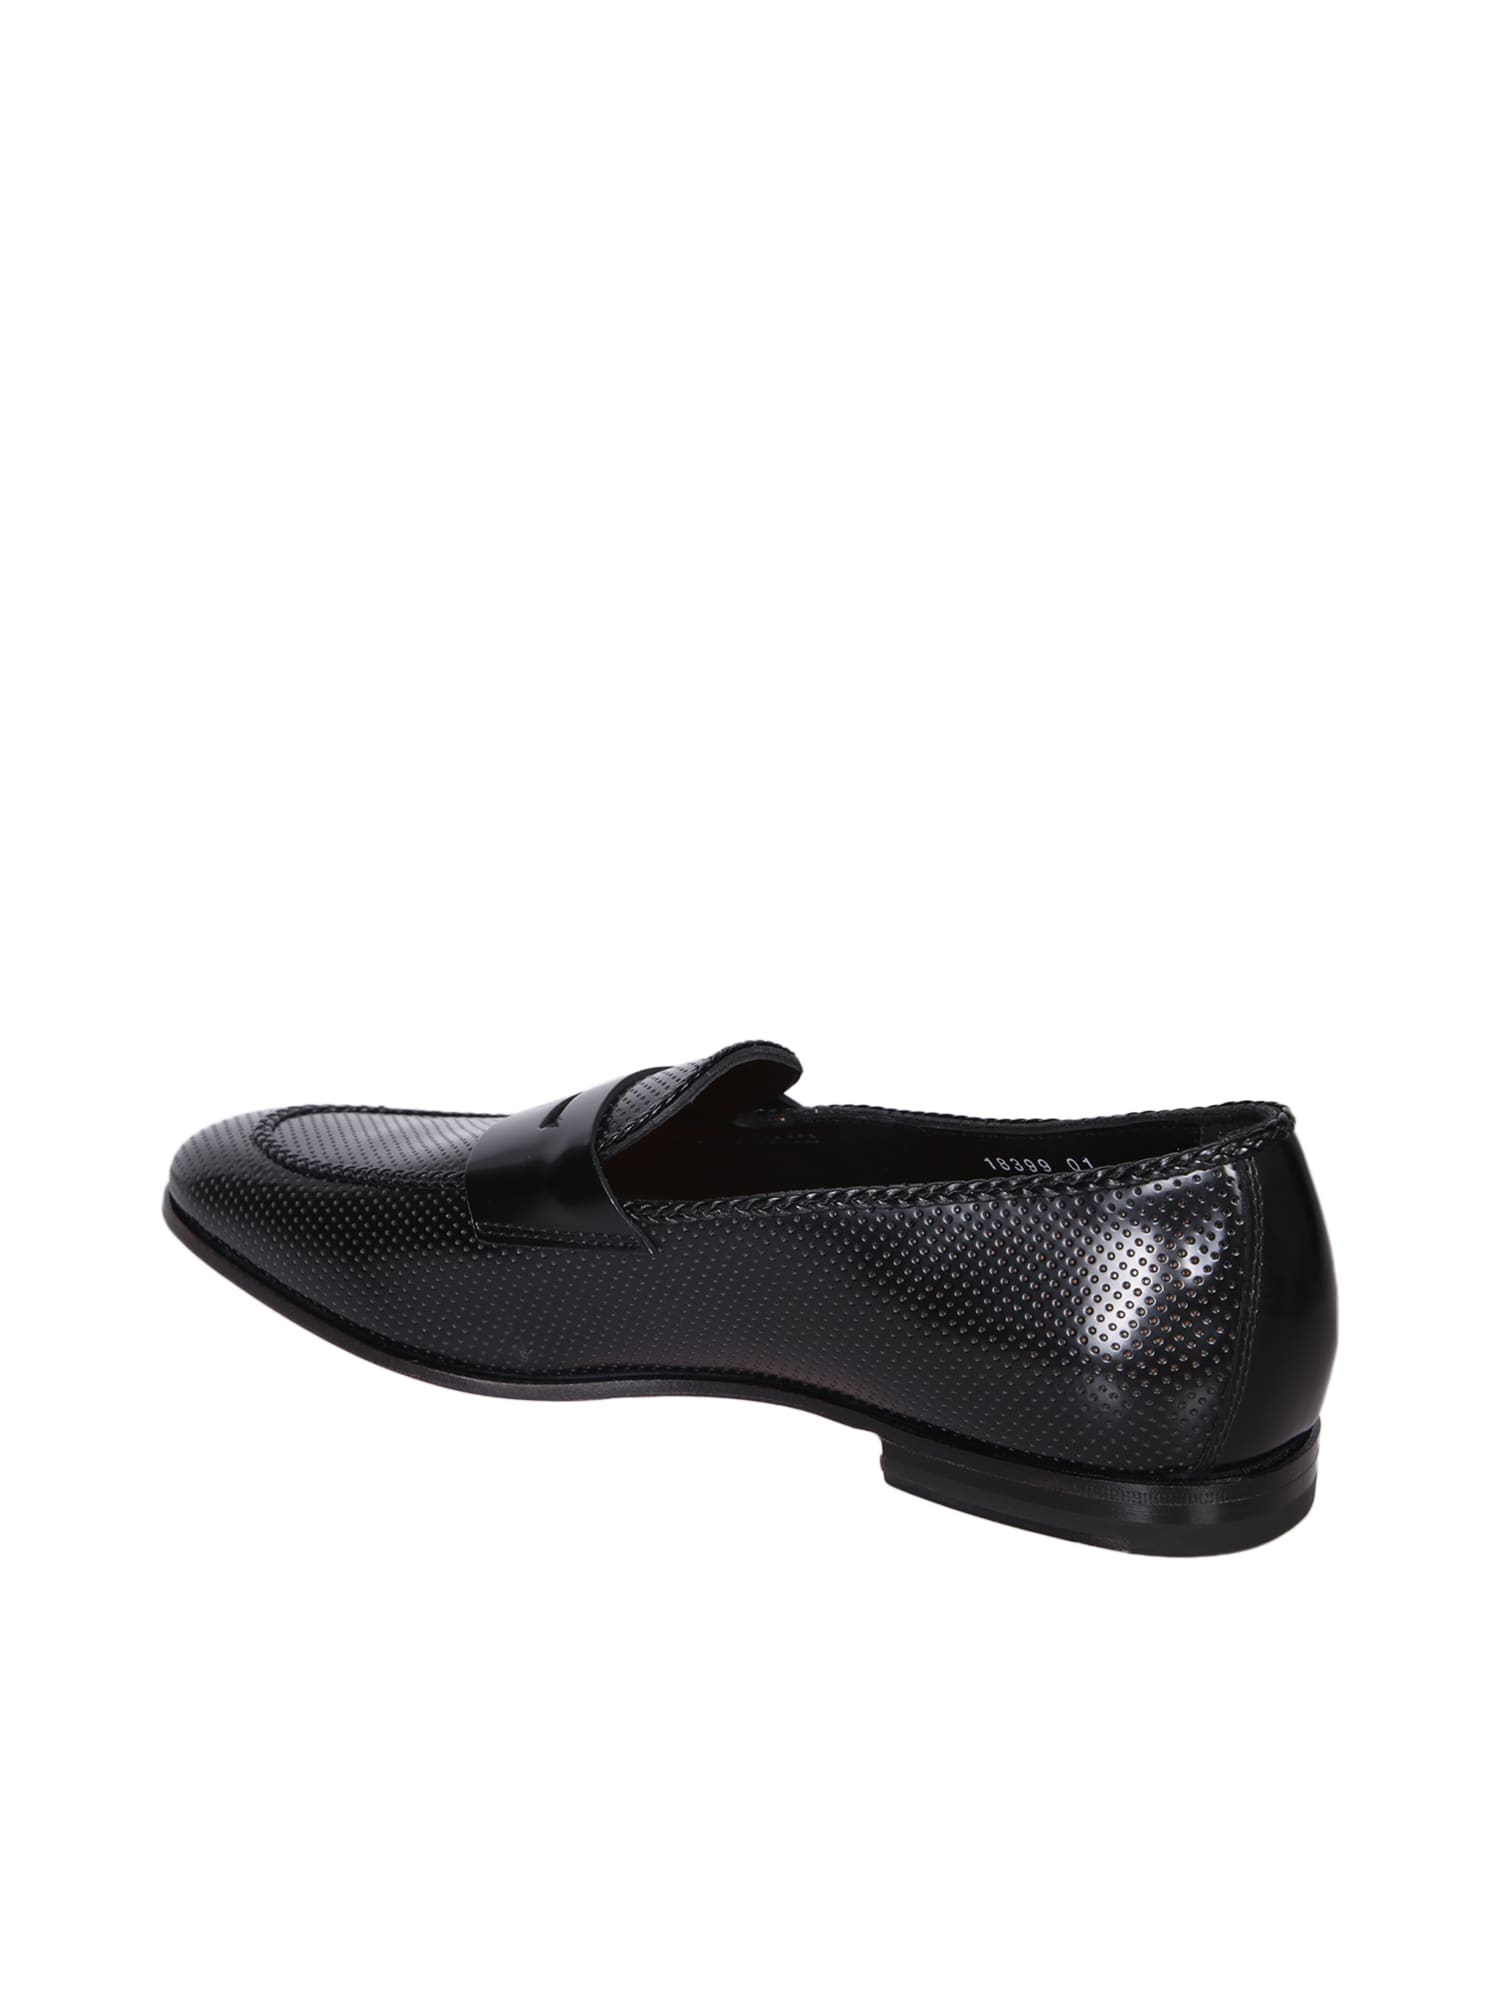 Shop Santoni Grifone Glossy Black Loafer